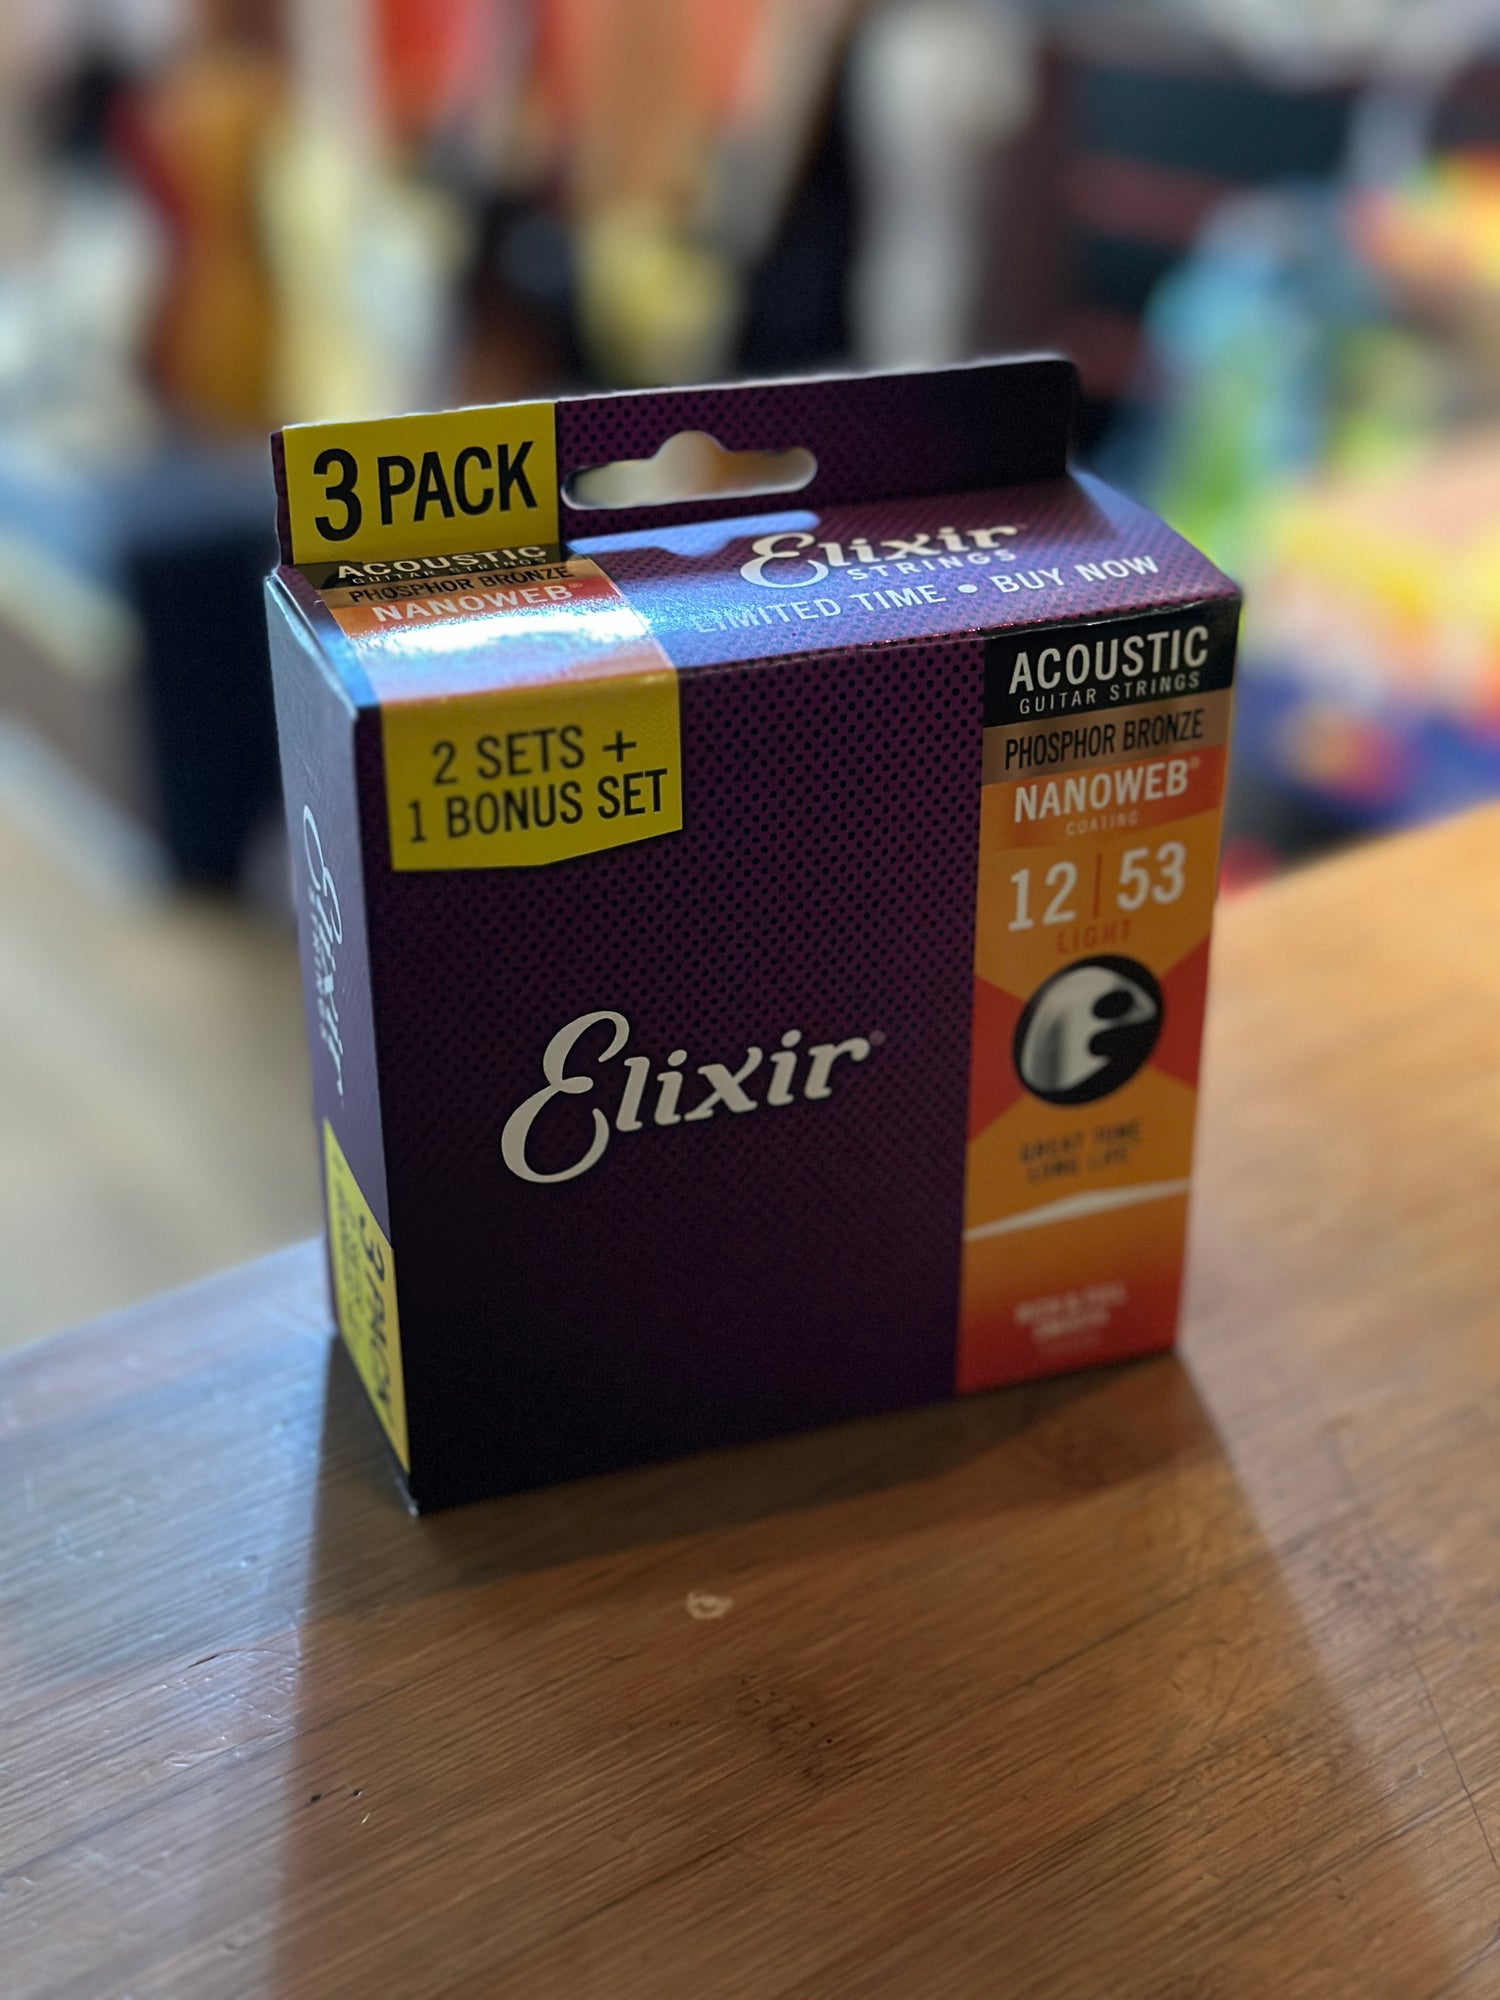 Elixir Multi Packs back in stock!